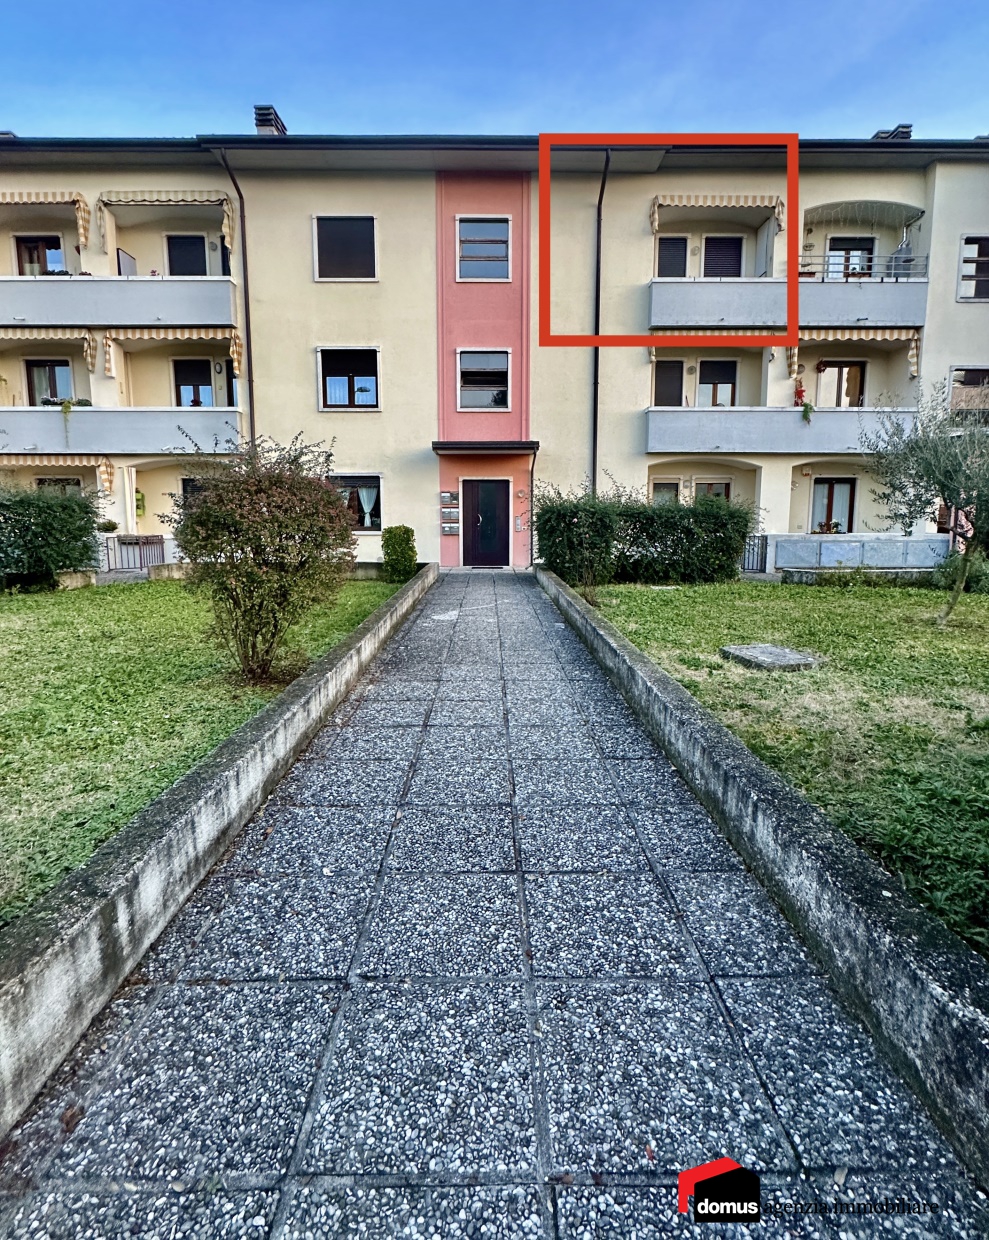 Appartamento in vendita a Thiene, 2 locali, prezzo € 65.000 | PortaleAgenzieImmobiliari.it